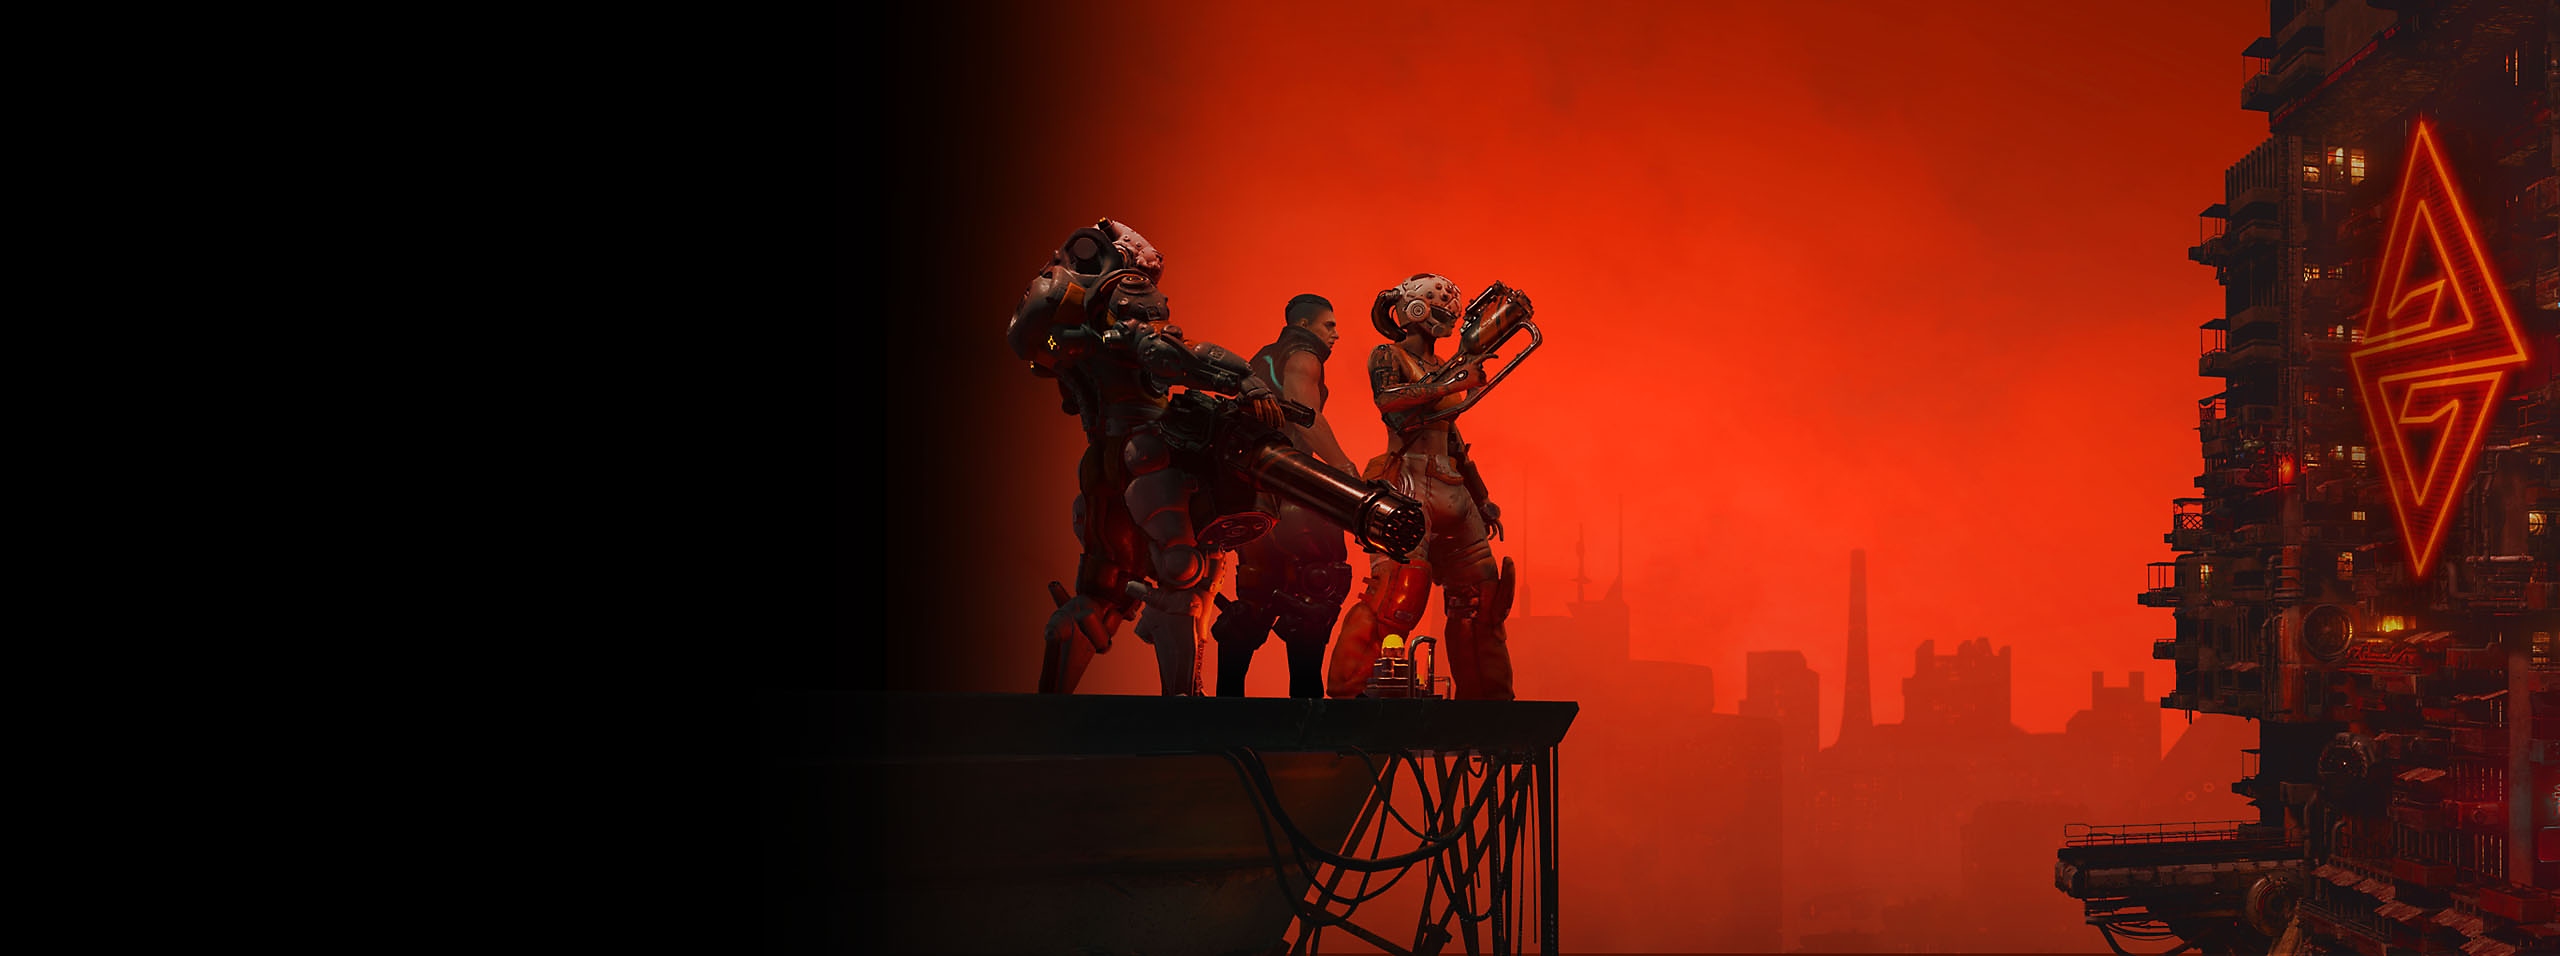 العمل الفني لبطل لعبة The Ascent يُعرض ثلاث شخصيات وأفق تحت سماء حمراء 